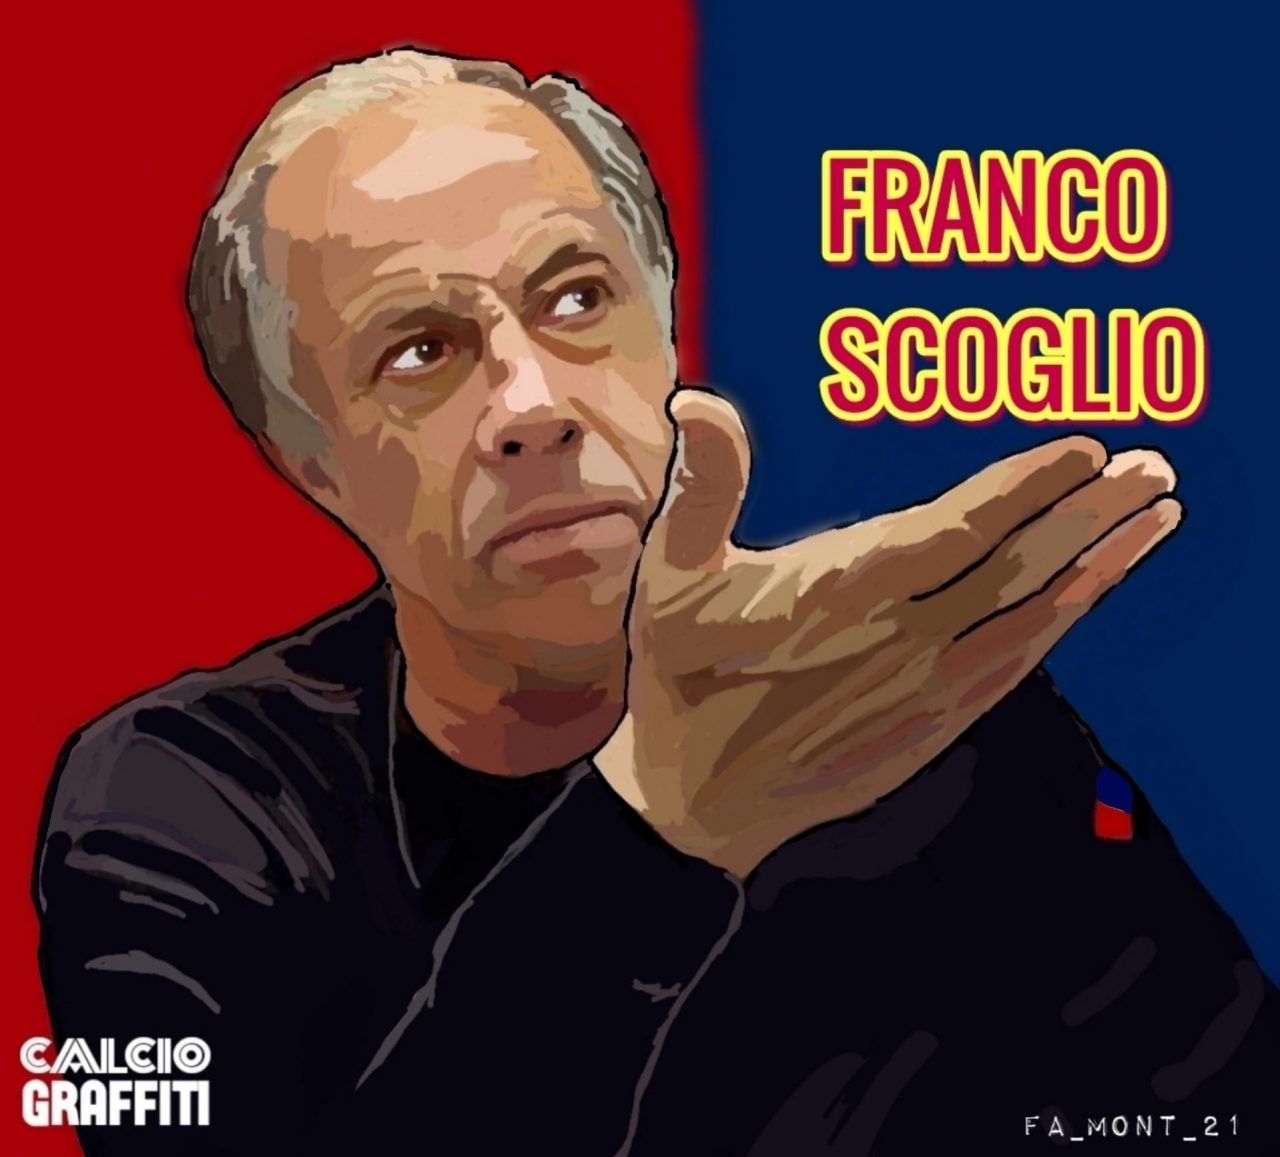 FRANCO SCOGLIO